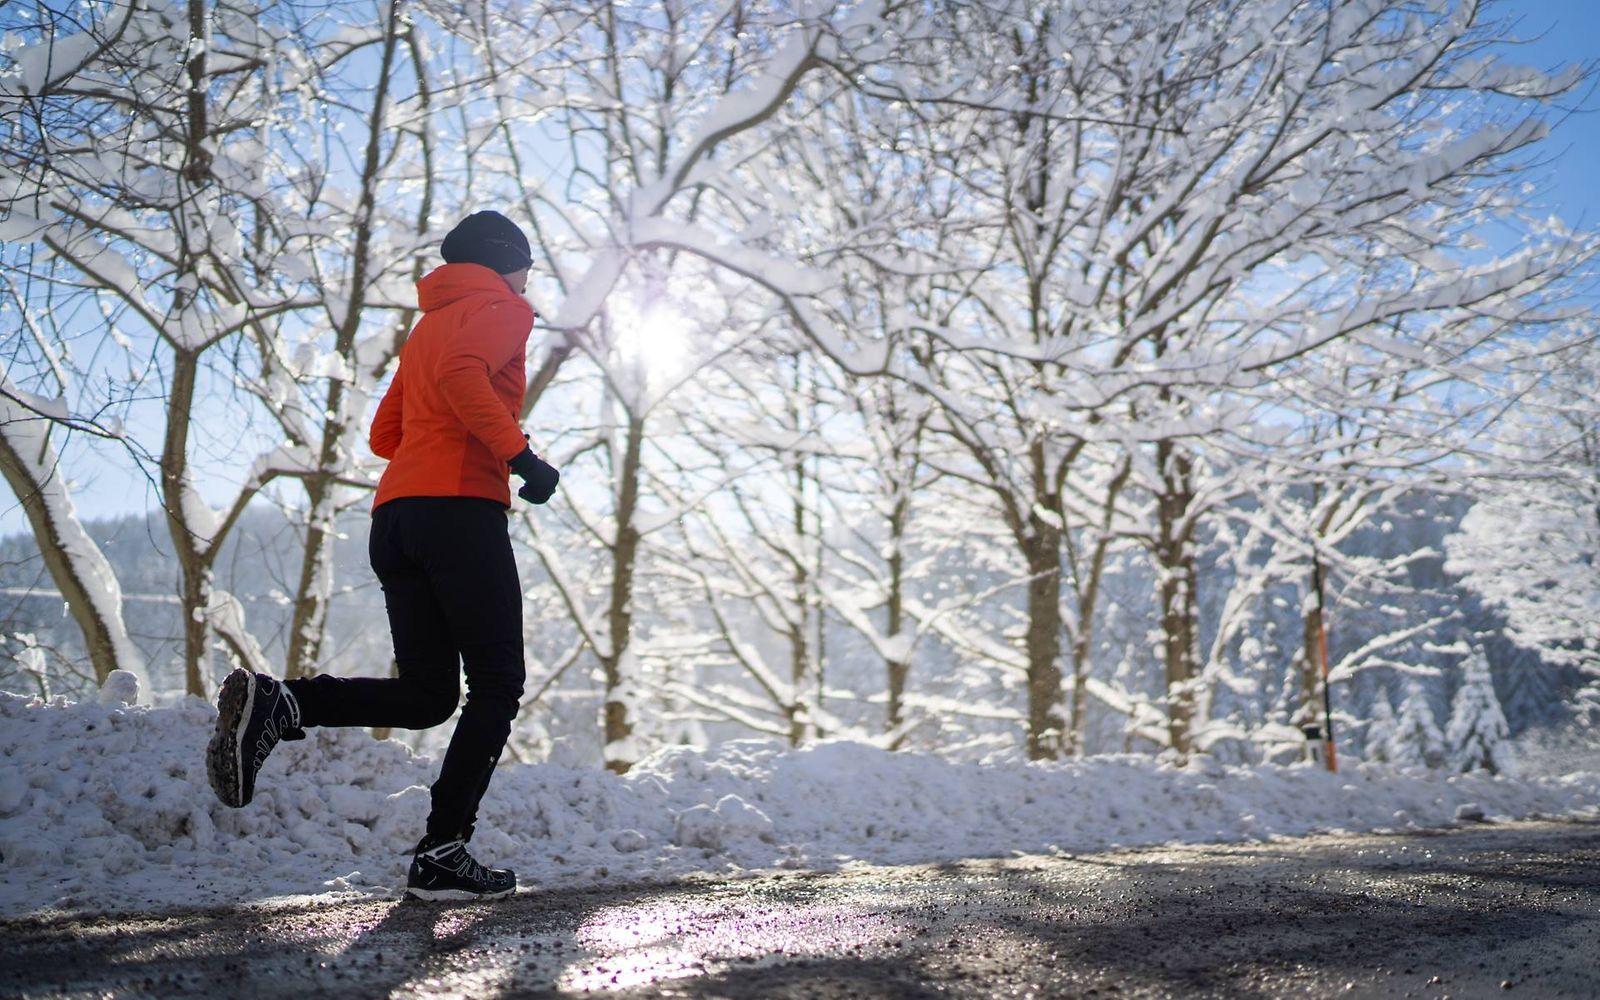 Laufen bei Kälte: Frau läuft eine verschneite Straße entlang